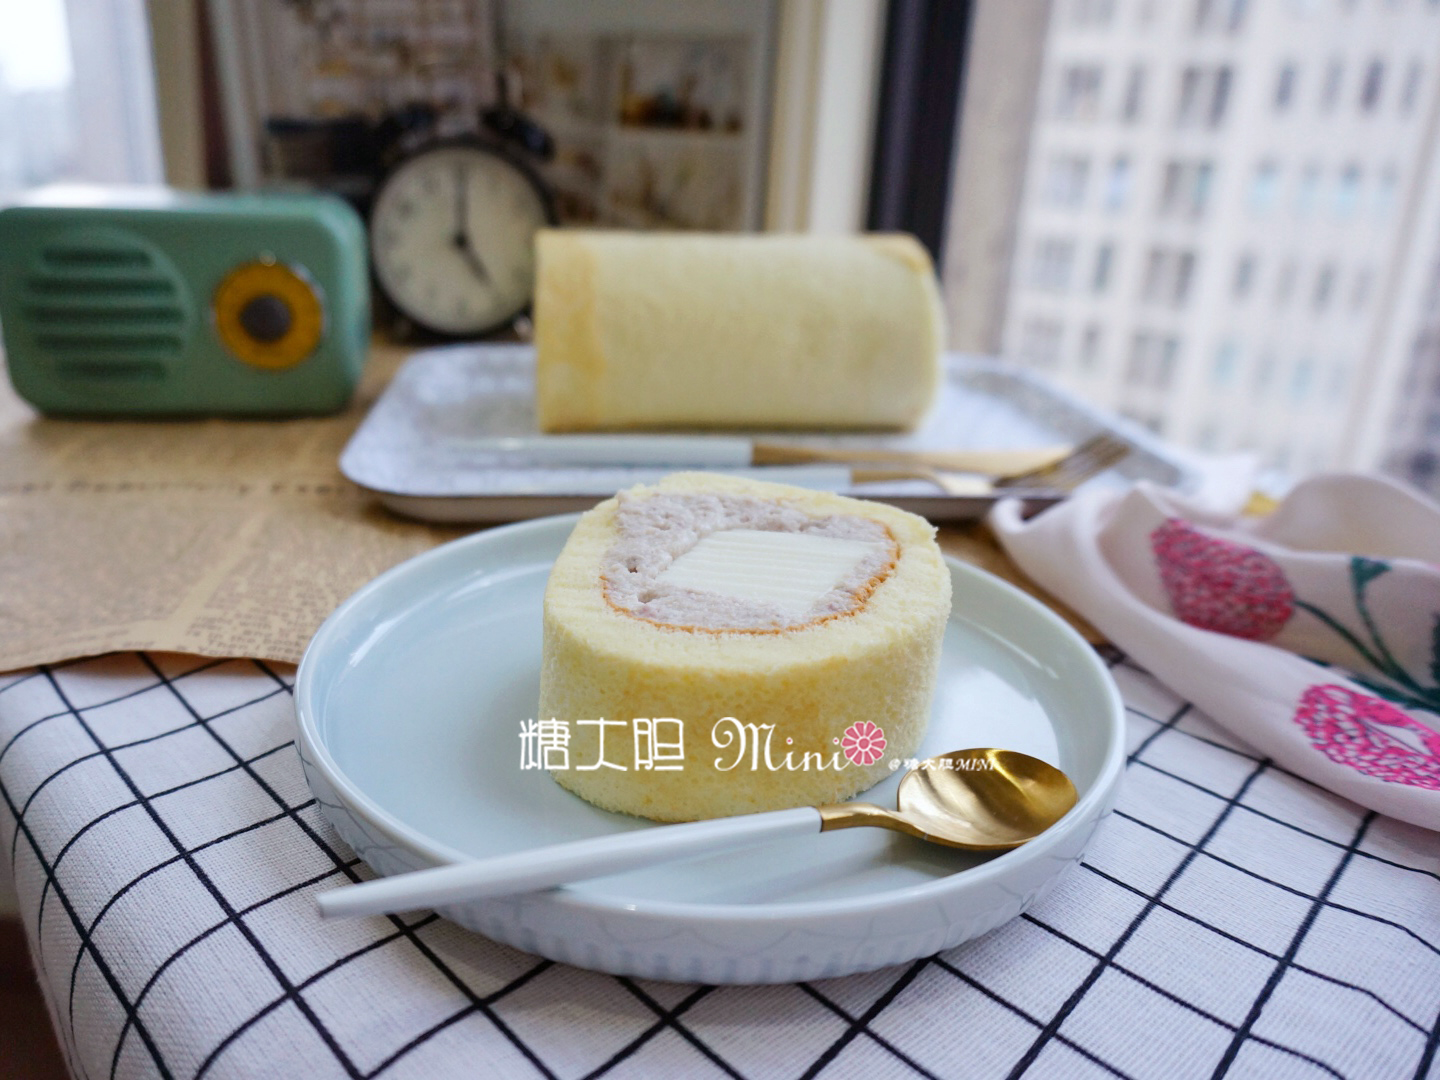 香芋奶冻卷——芋头酱和奶冻配合的非常完美的做法